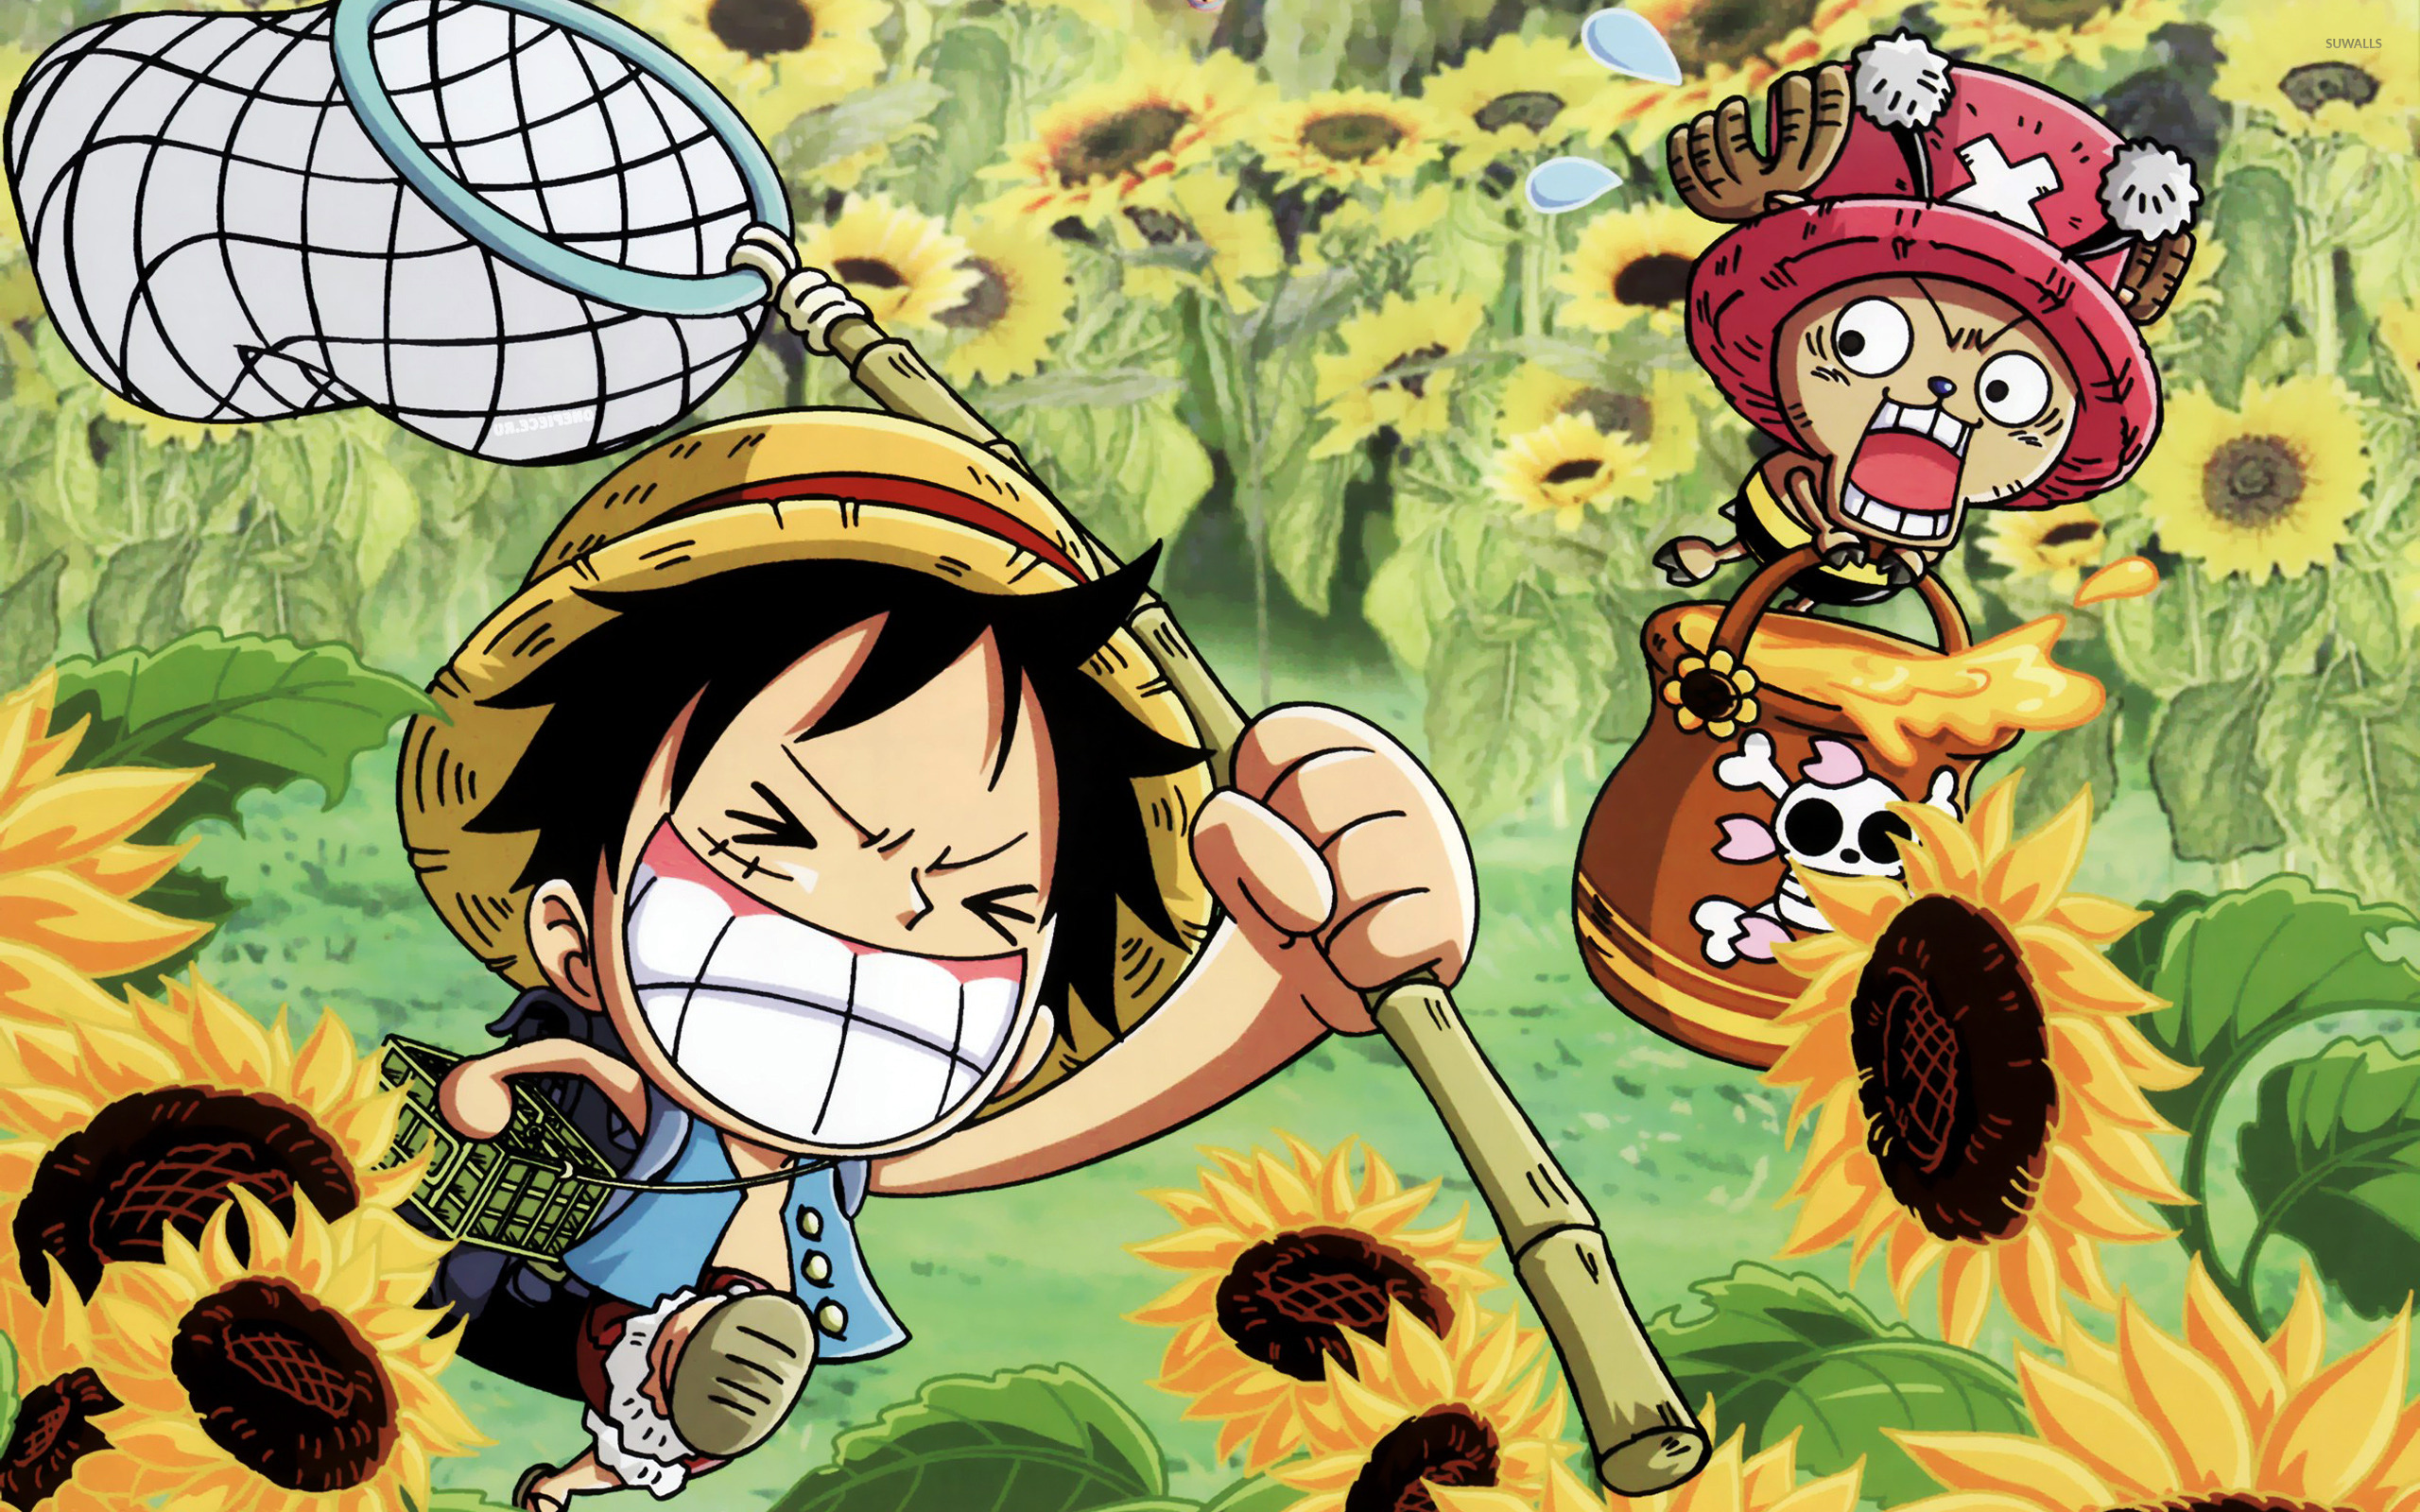 One Piece là một bộ truyện tranh vô cùng nổi tiếng và được yêu thích bởi hàng triệu bạn trẻ trên toàn thế giới. Từ những tình tiết hấp dẫn đến những nhân vật thú vị, One Piece chắc chắn sẽ làm bạn say mê từ trang đầu tiên đến trang cuối cùng. Hãy xem hình ảnh liên quan đến One Piece và khám phá thêm về thế giới kỳ thú này nhé!